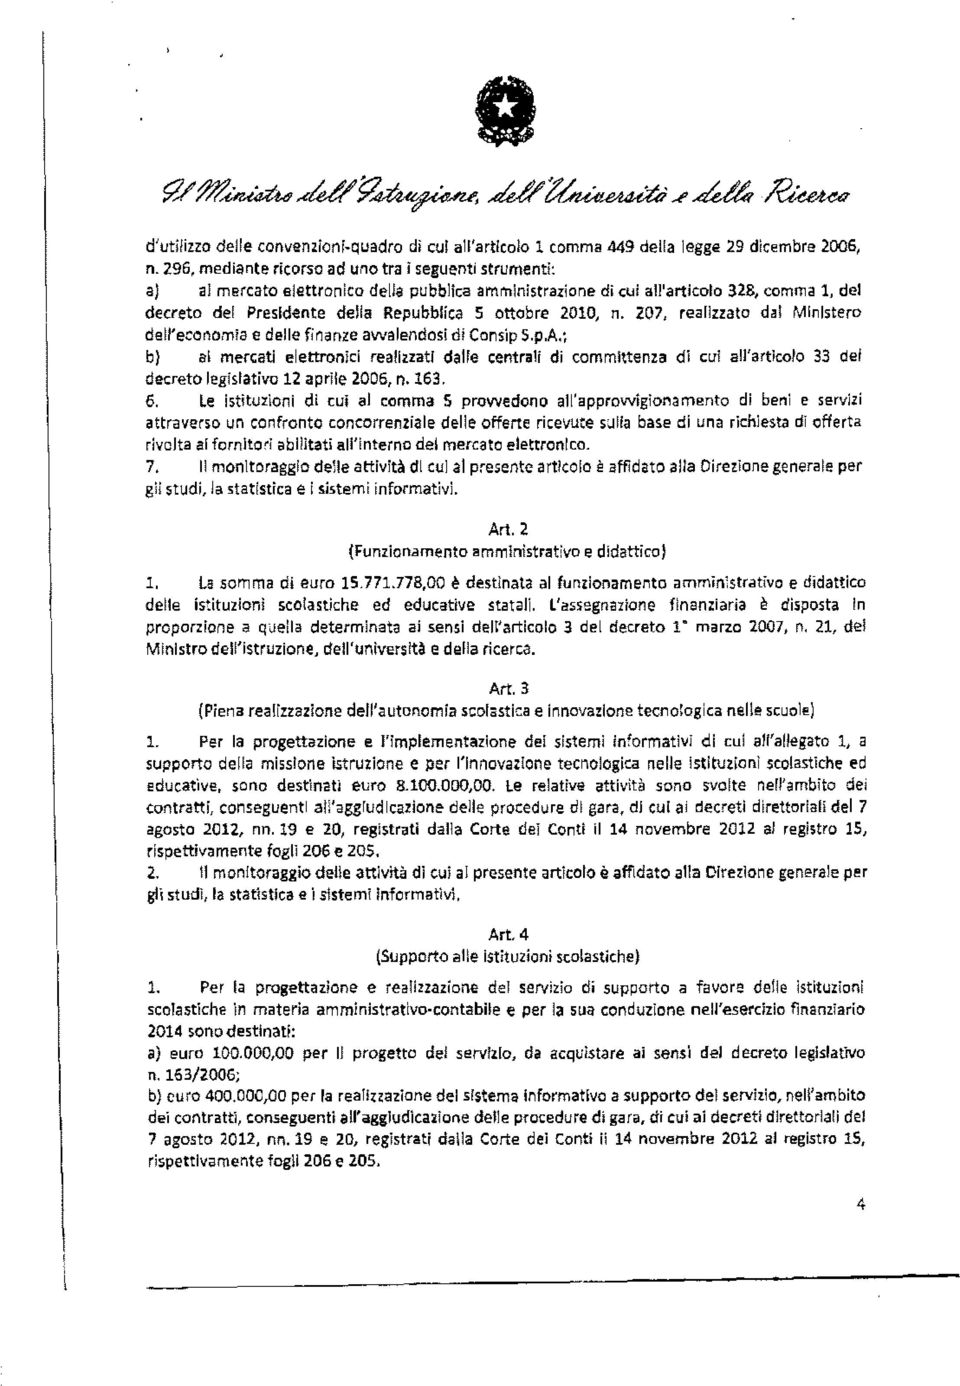 2010, n. 207, realizzato dal Ministero dell'economia e delle finanze avvalendosi di Consip S.p.A.